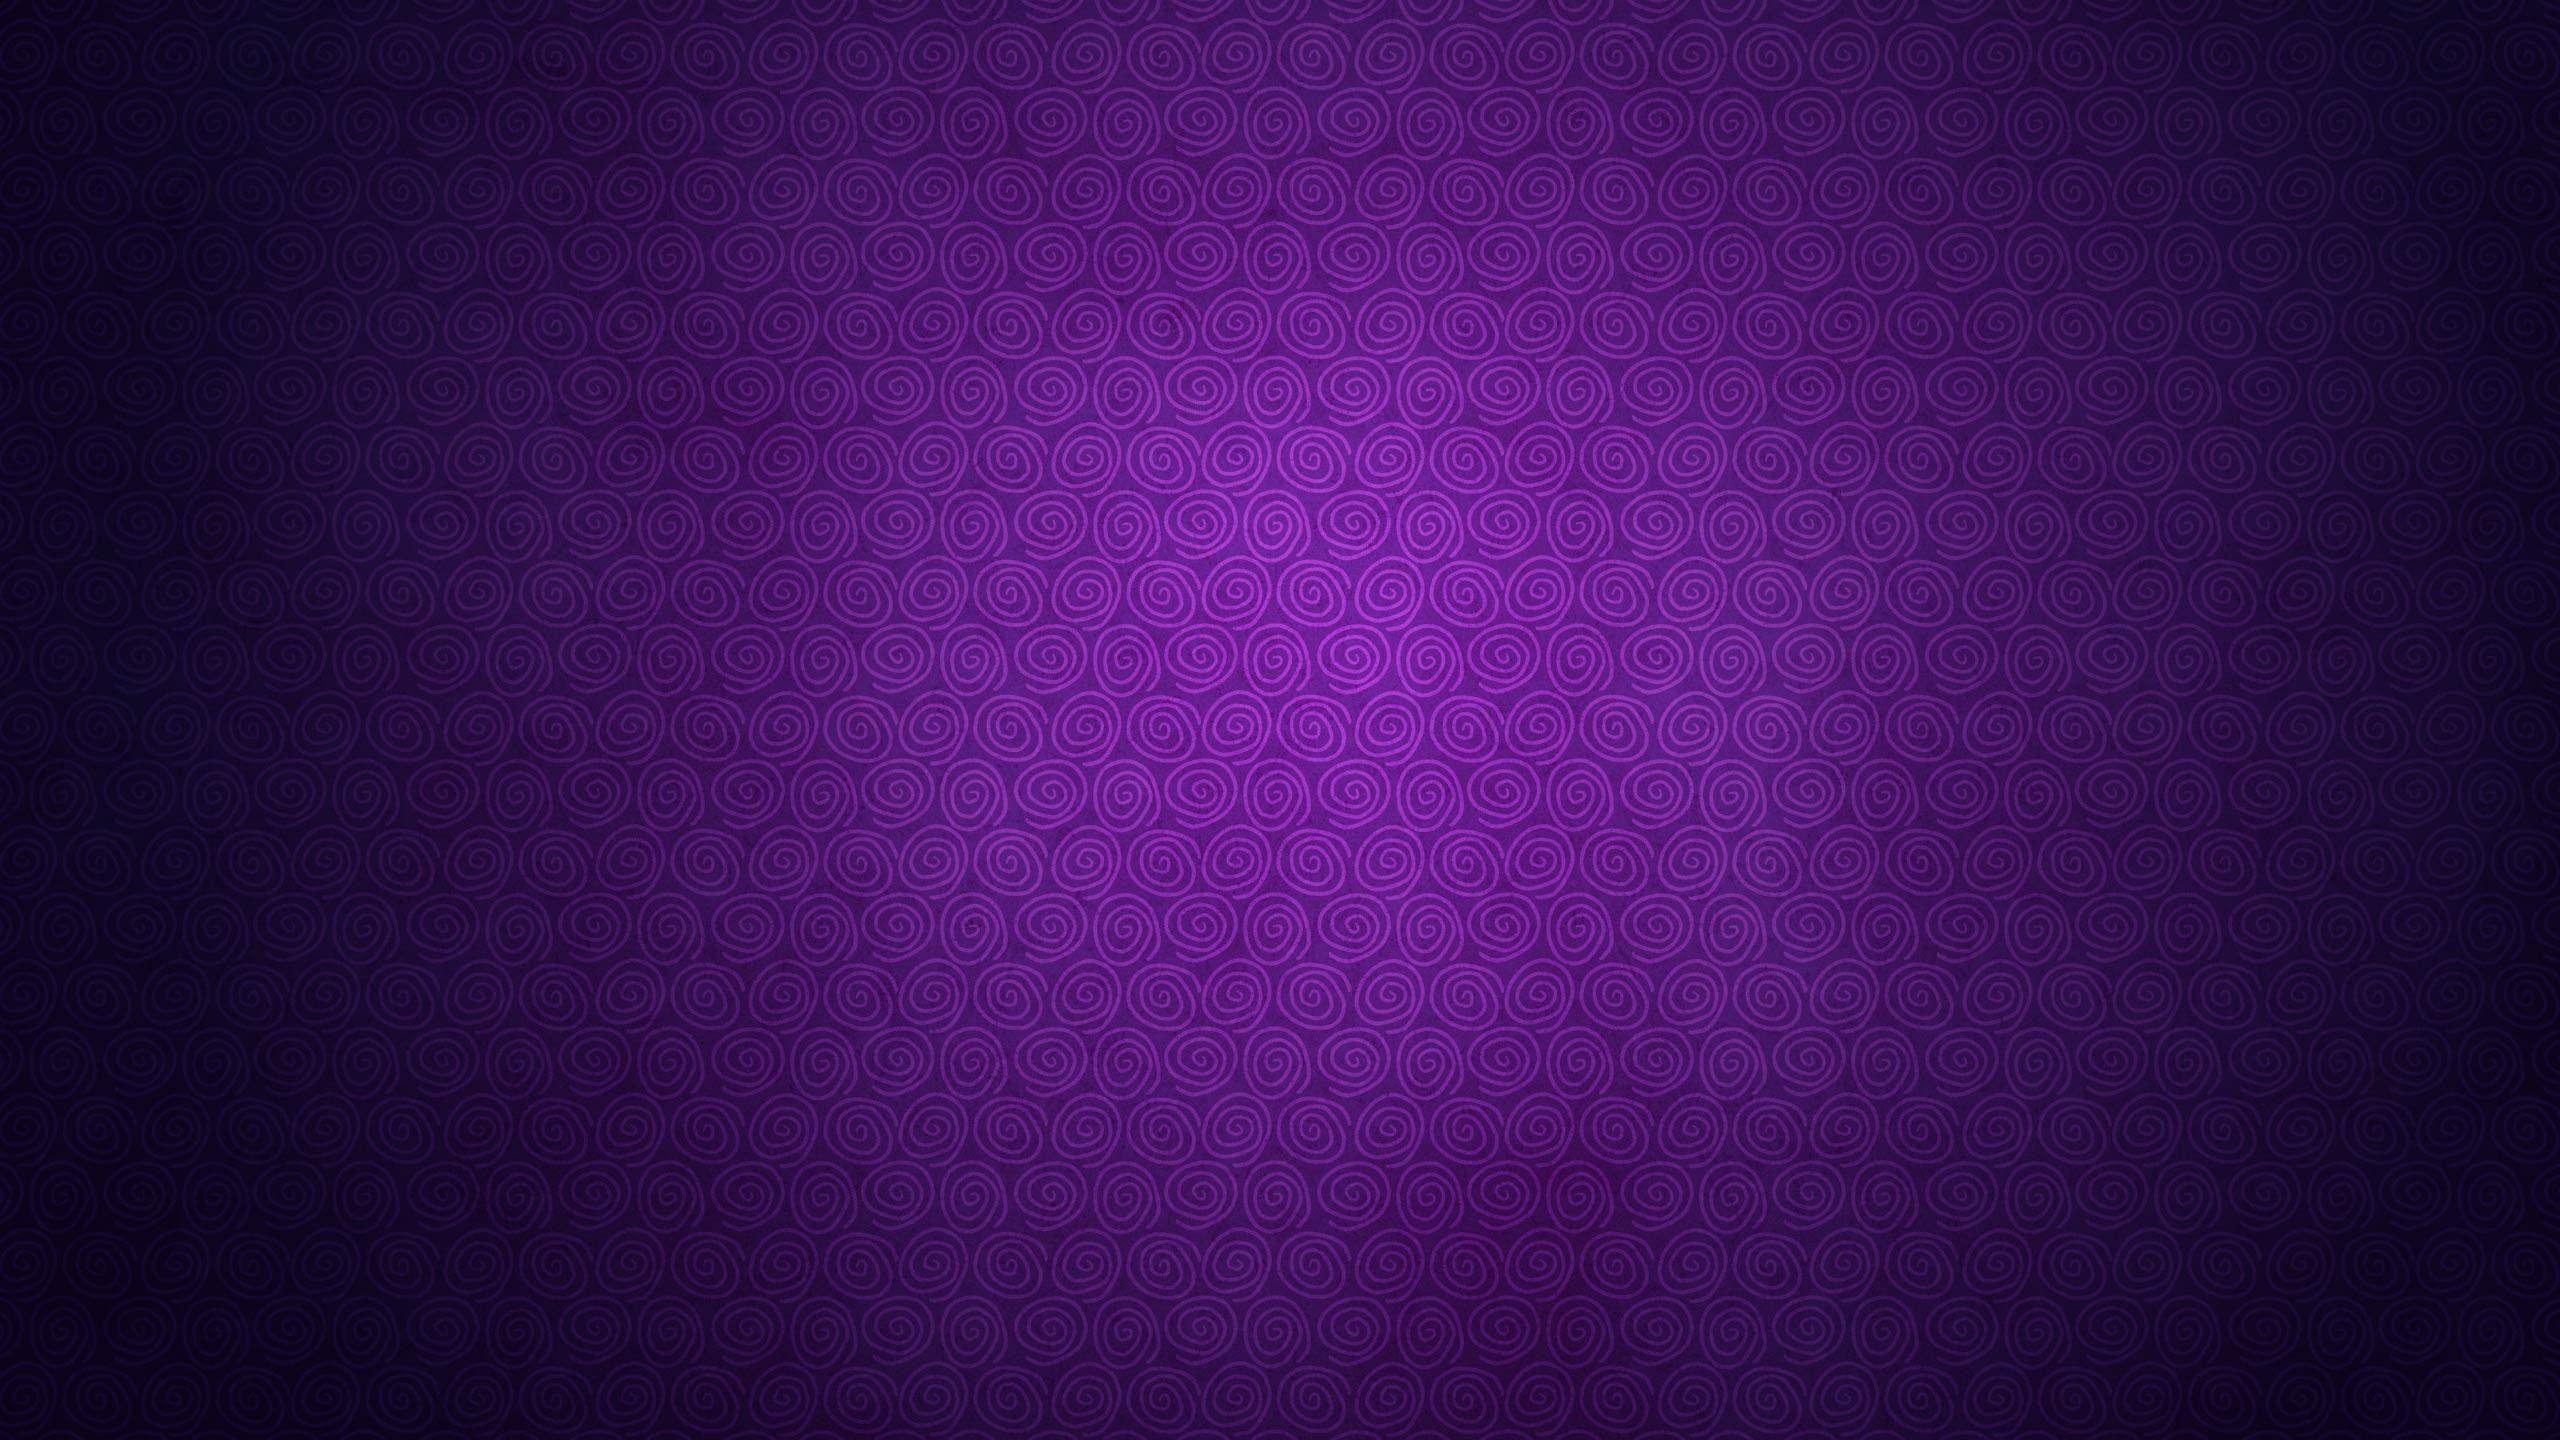 Purple Pattern Wallpapers Top Những Hình Ảnh Đẹp